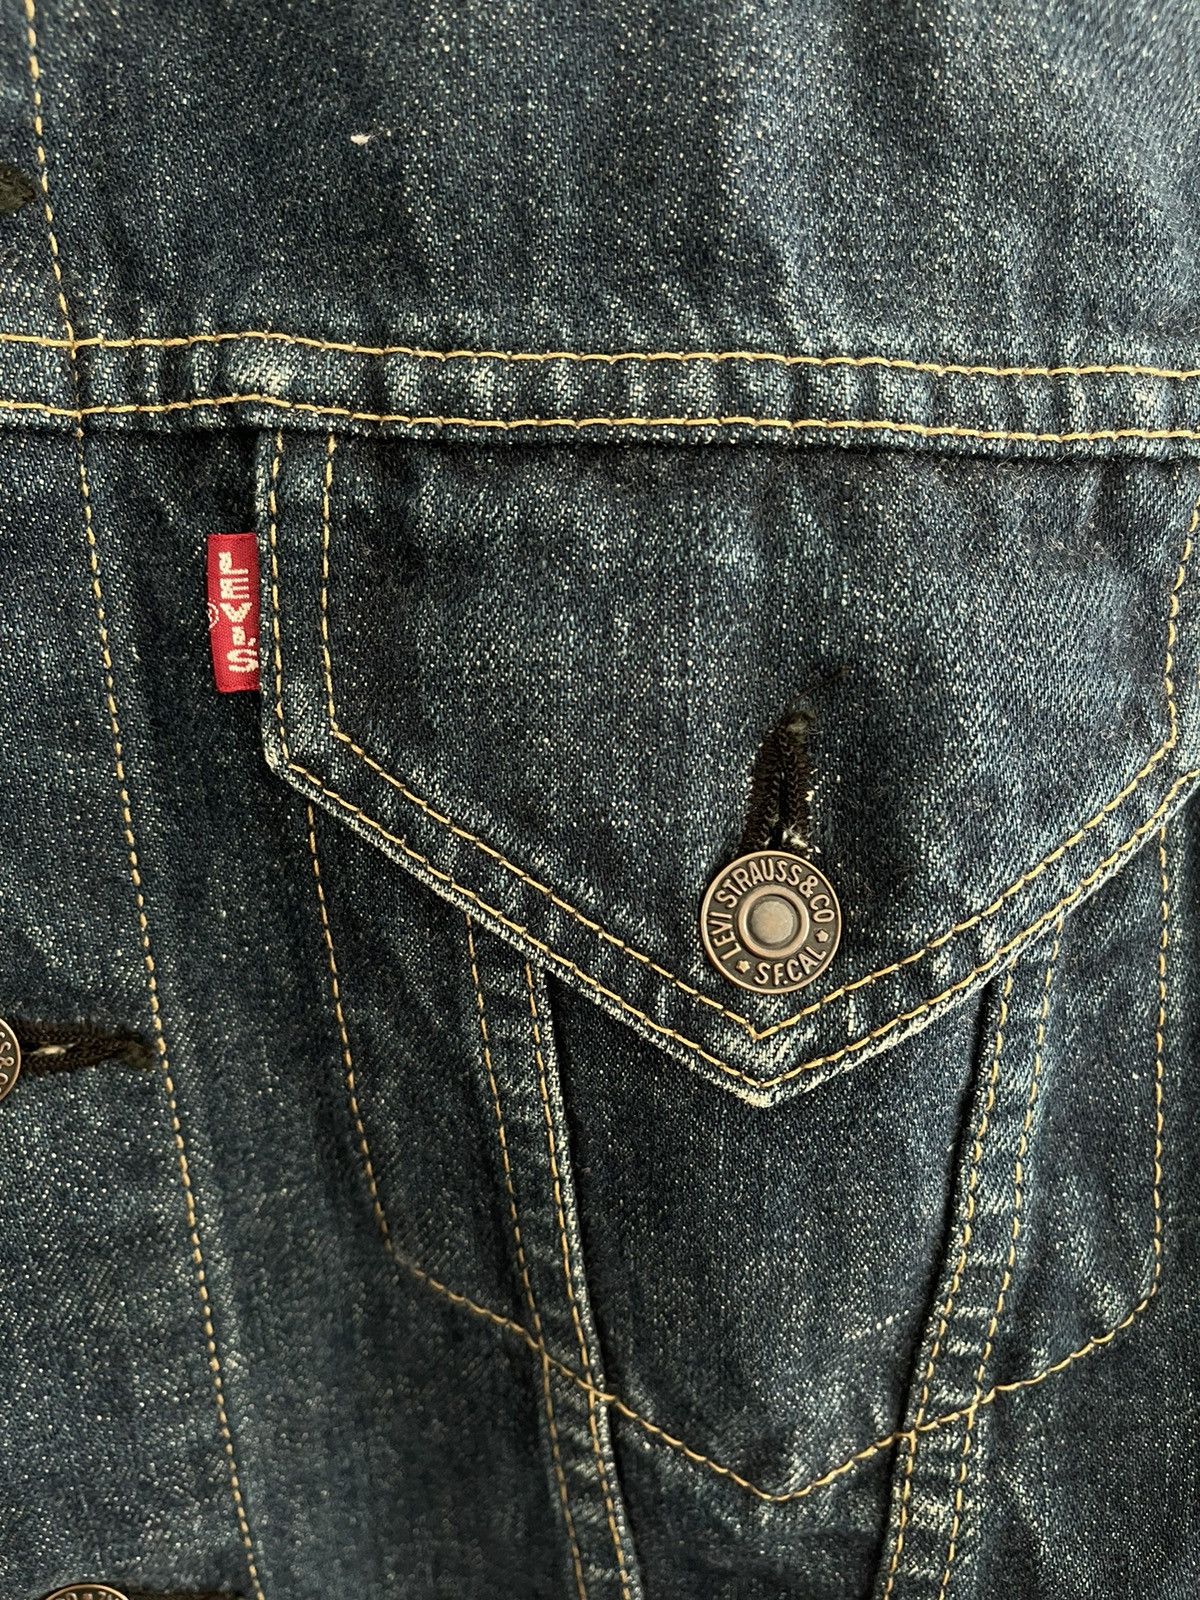 Vintage Levis Denim Jacket - 3